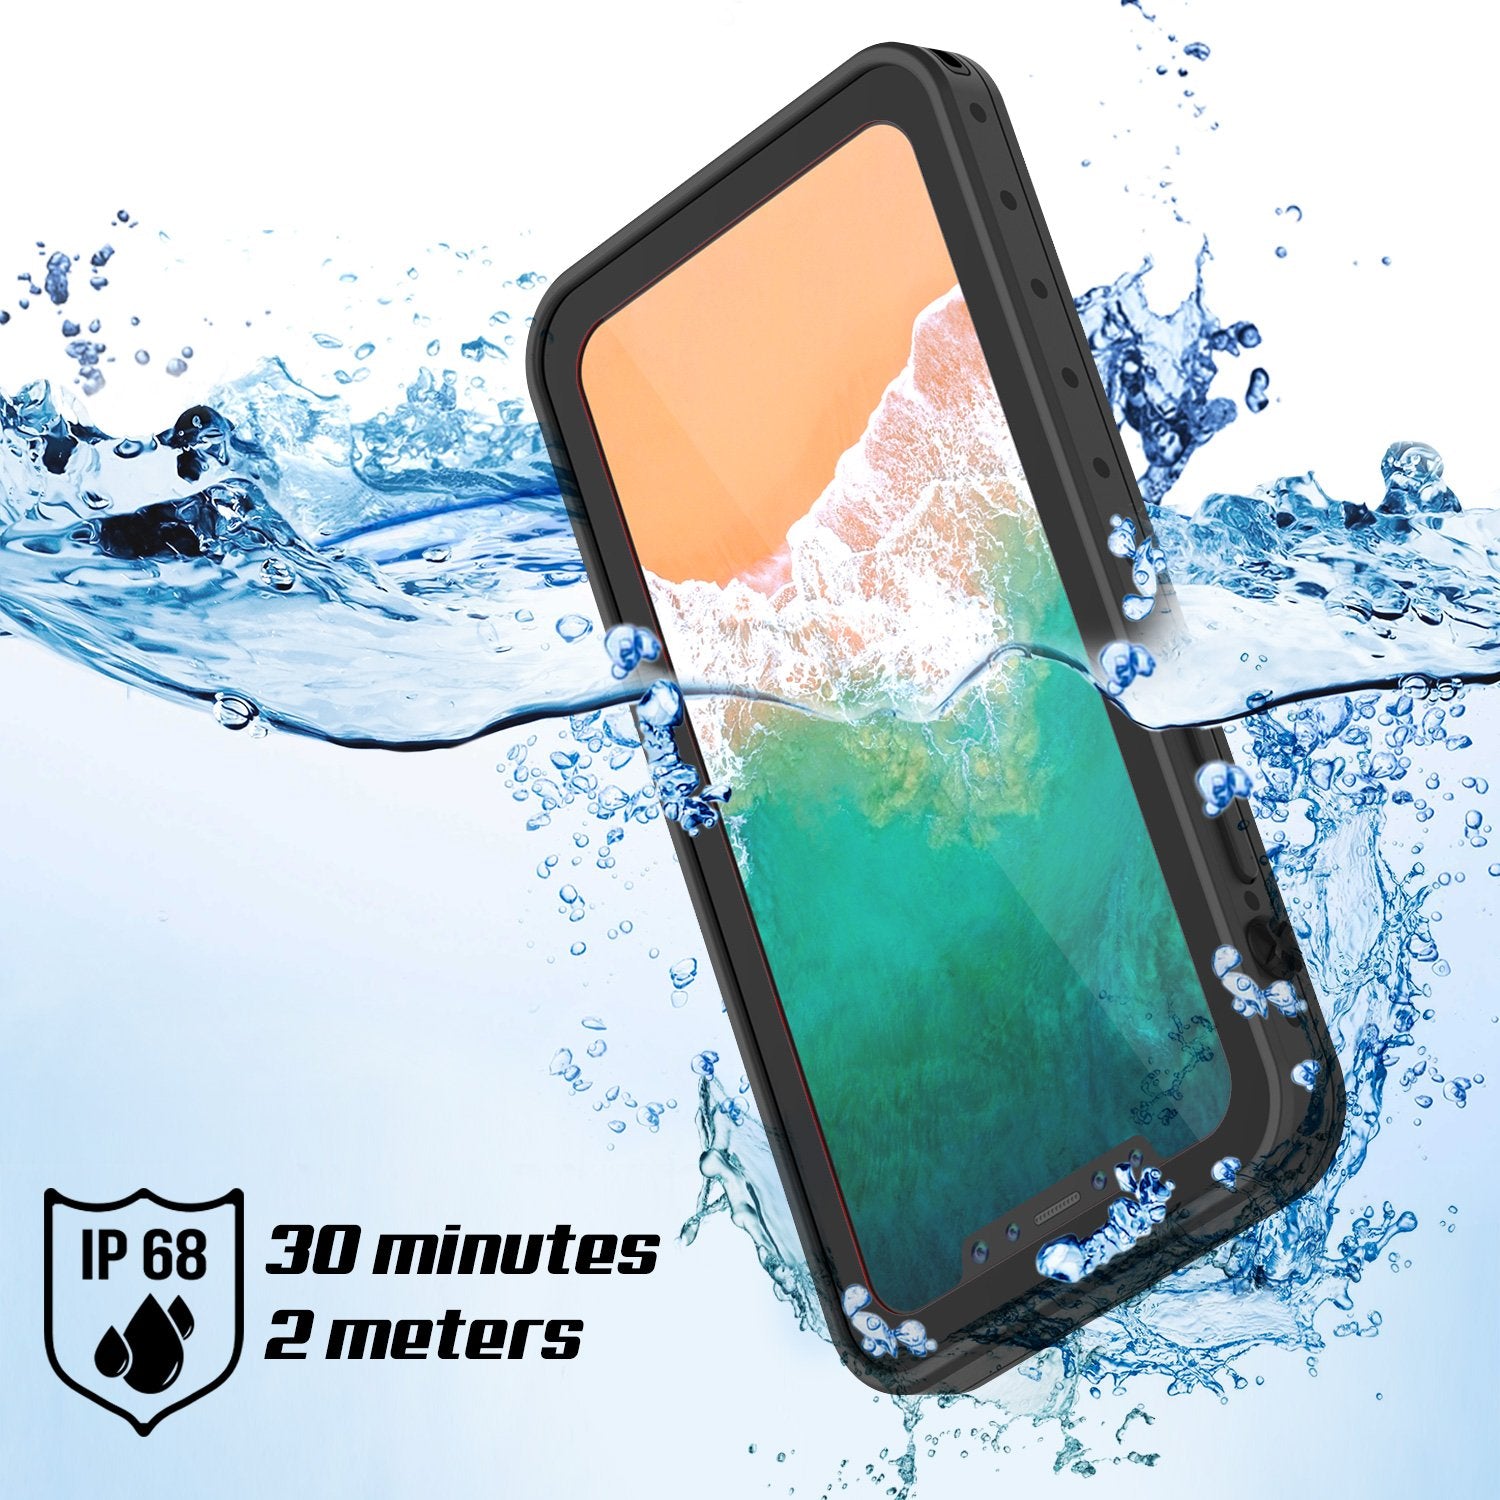 iPhone X Waterproof IP68 Case, Punkcase [Black] [StudStar Series] [Slim Fit] [Dirtproof]